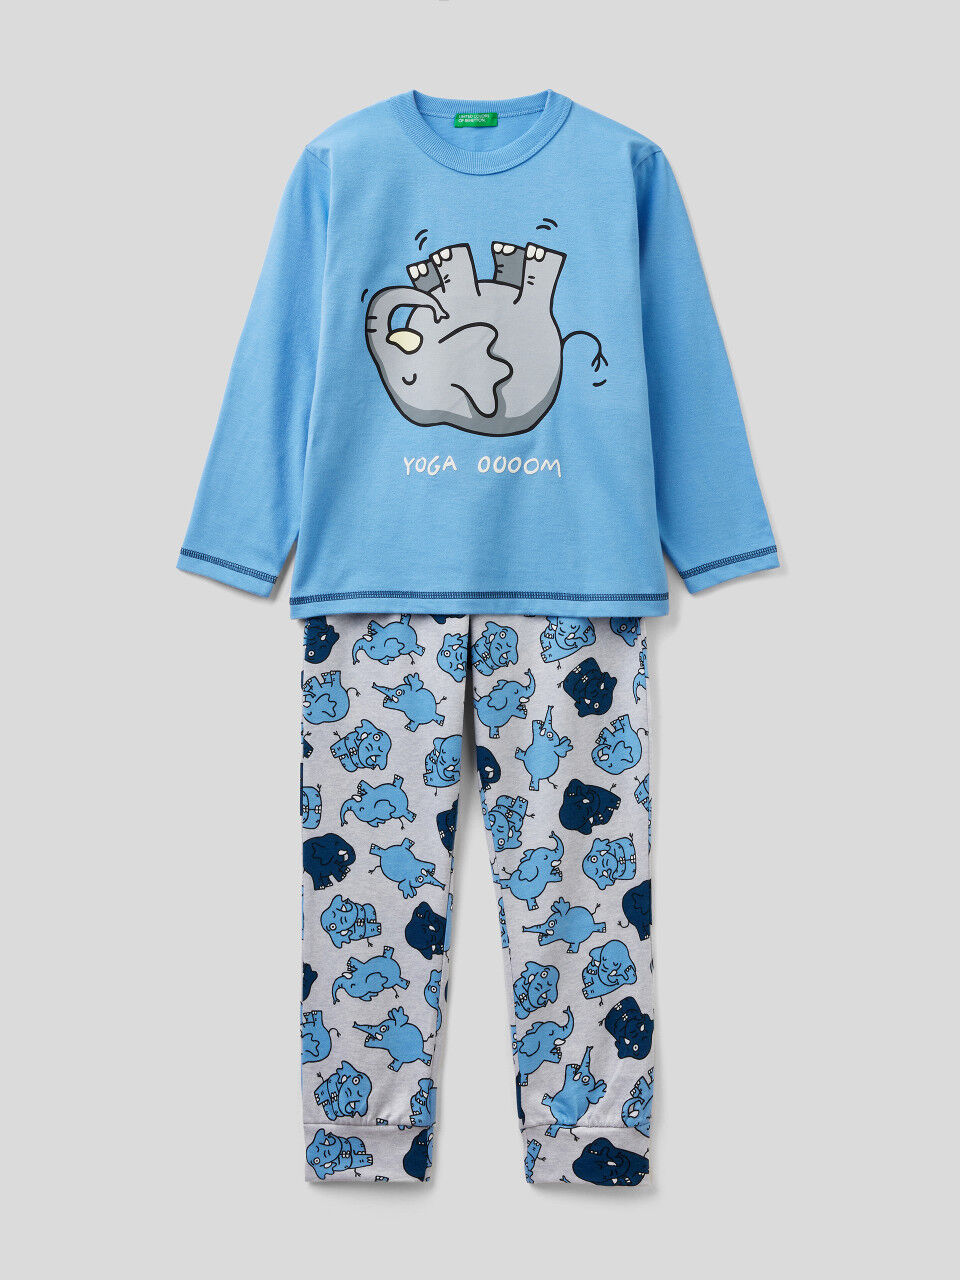 Long 100% cotton pajamas with print